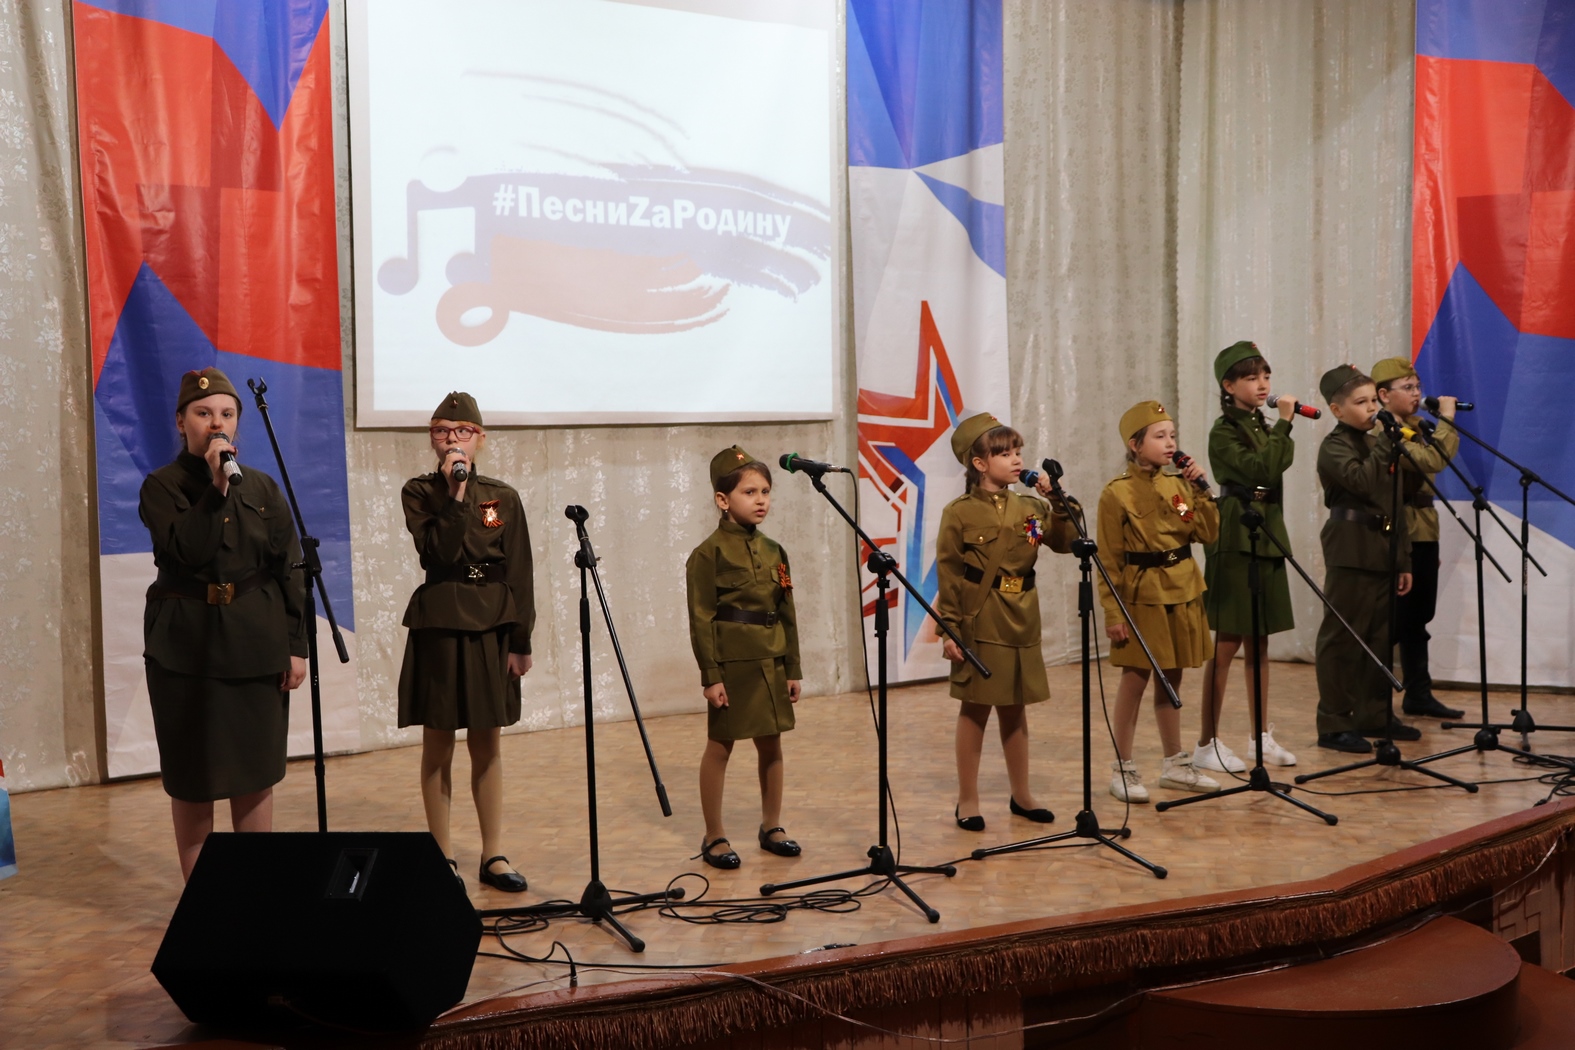 Патриотический песенный фестиваль «ПесниZаРодину» объединил уже почти 16 тысяч жителей КуZбасса